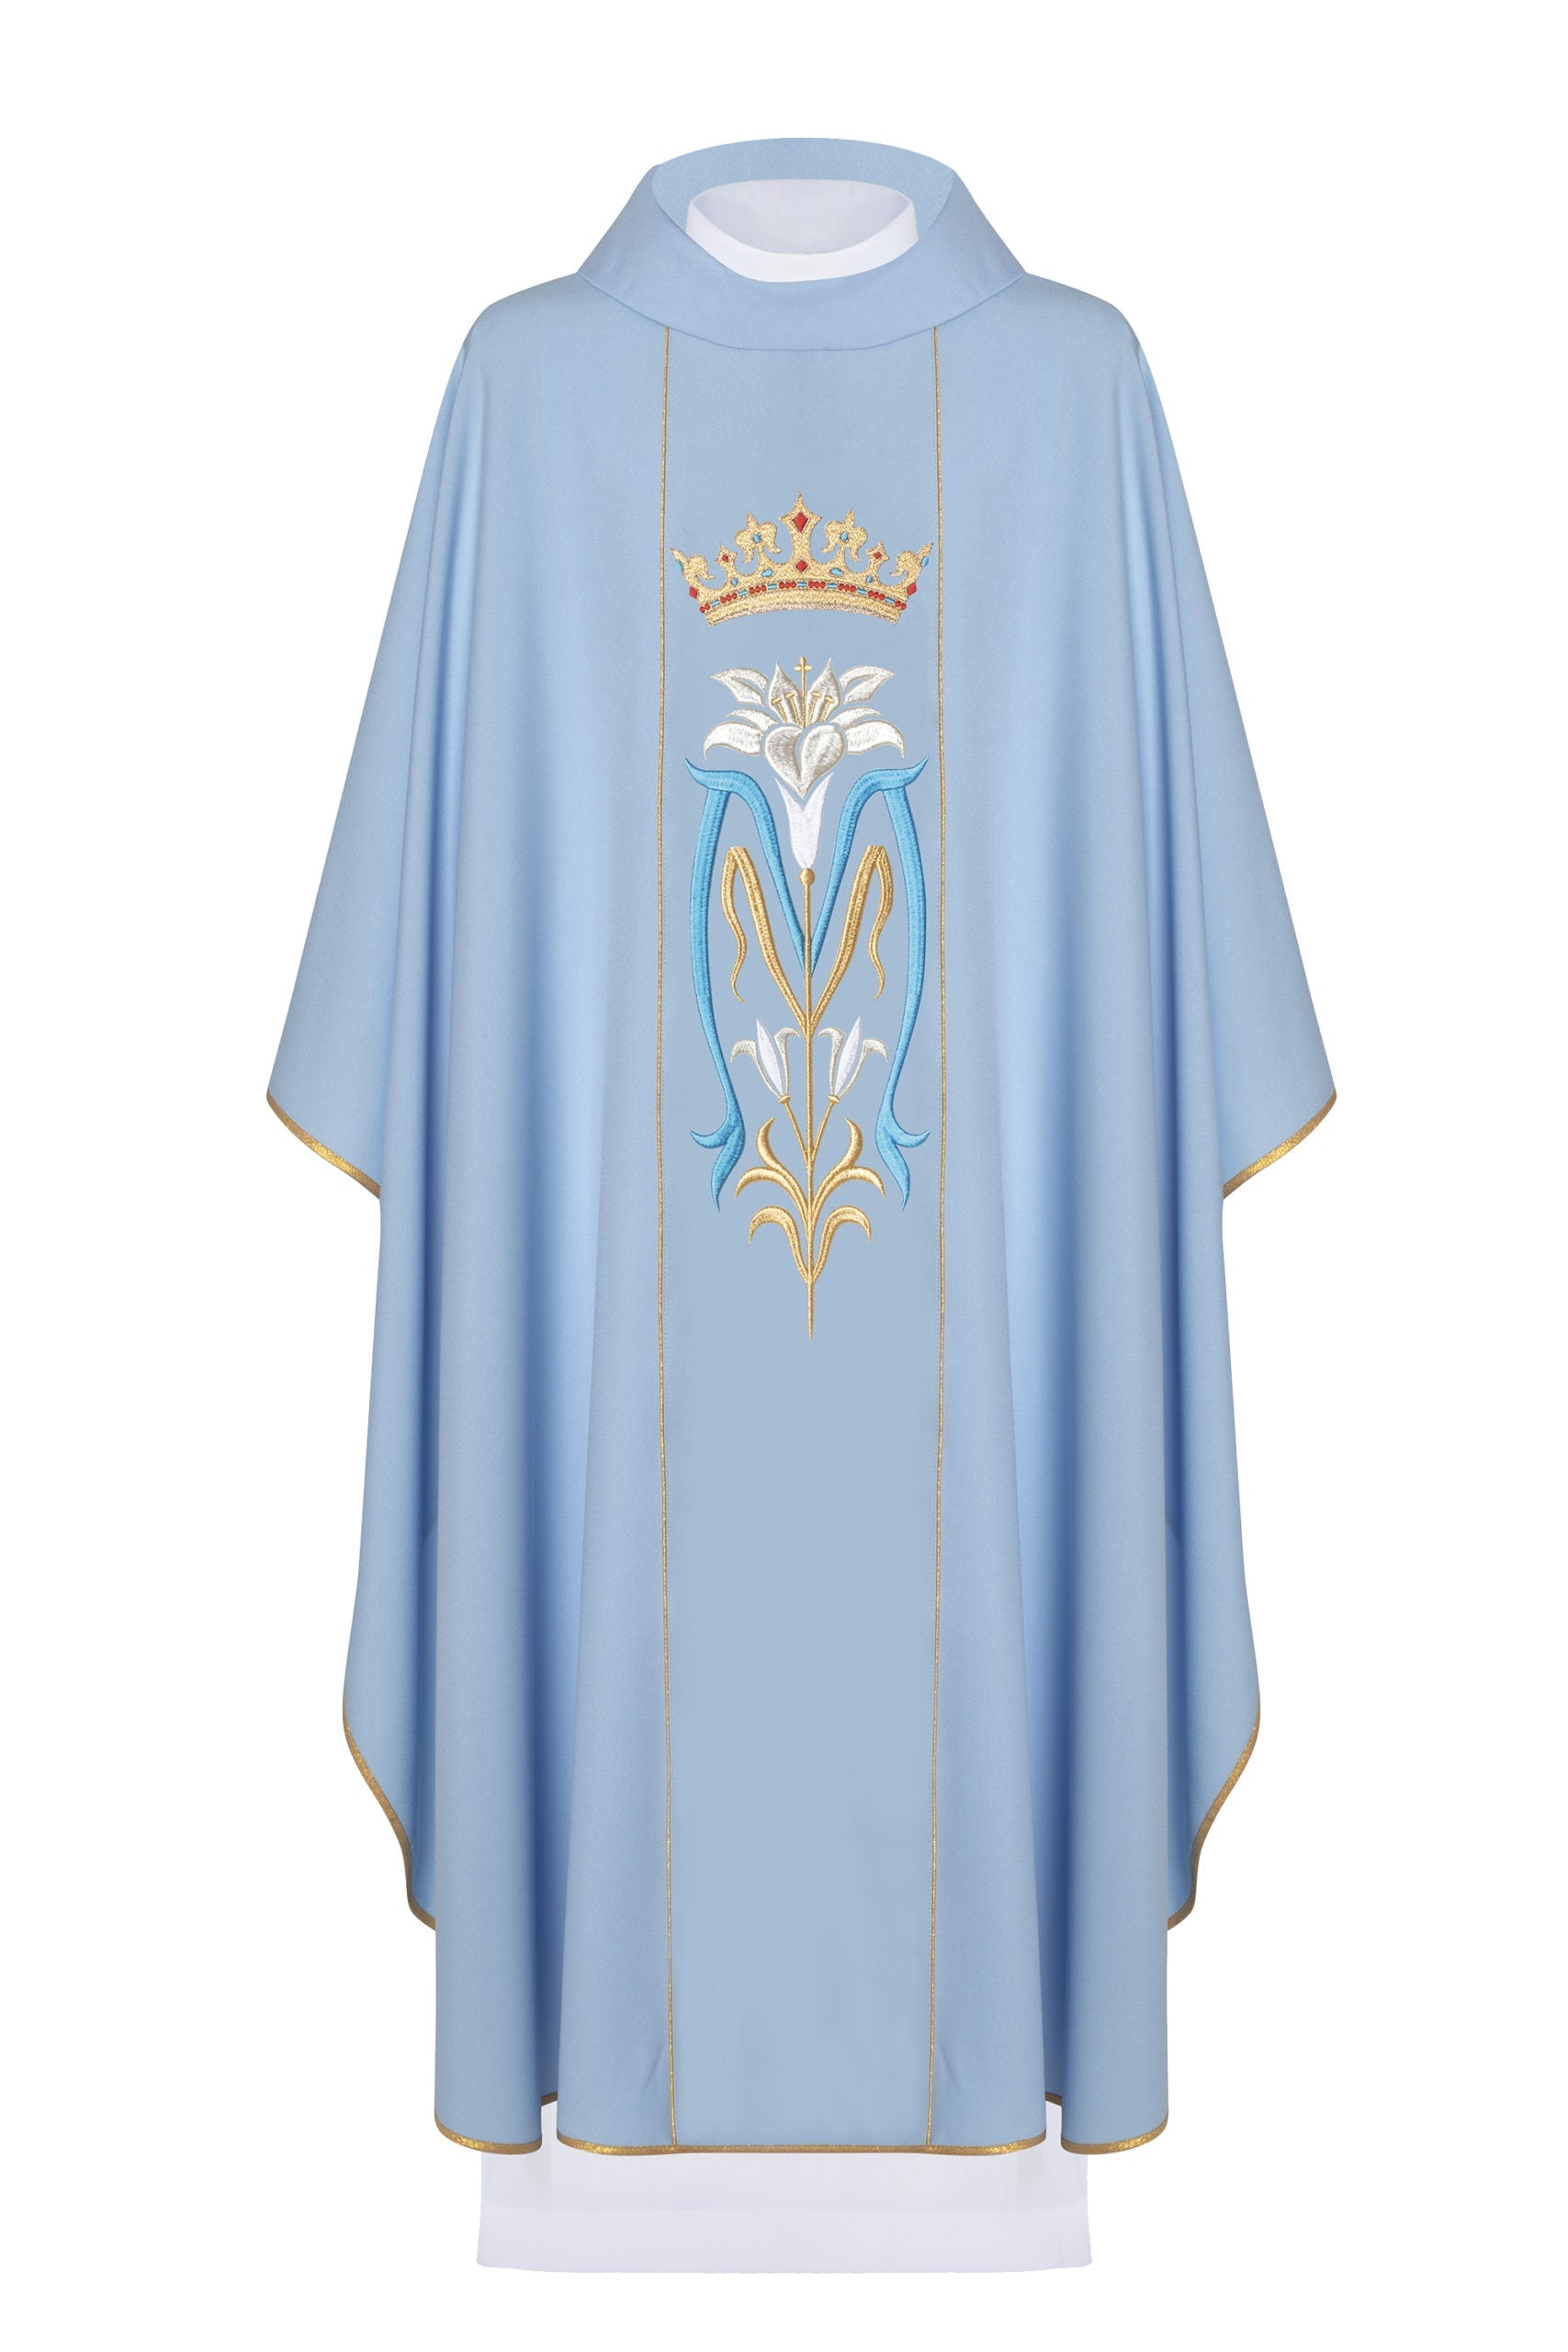 Ornat liturgiczny Maryjnyhaftowany z koroną KOR/058 Niebieski